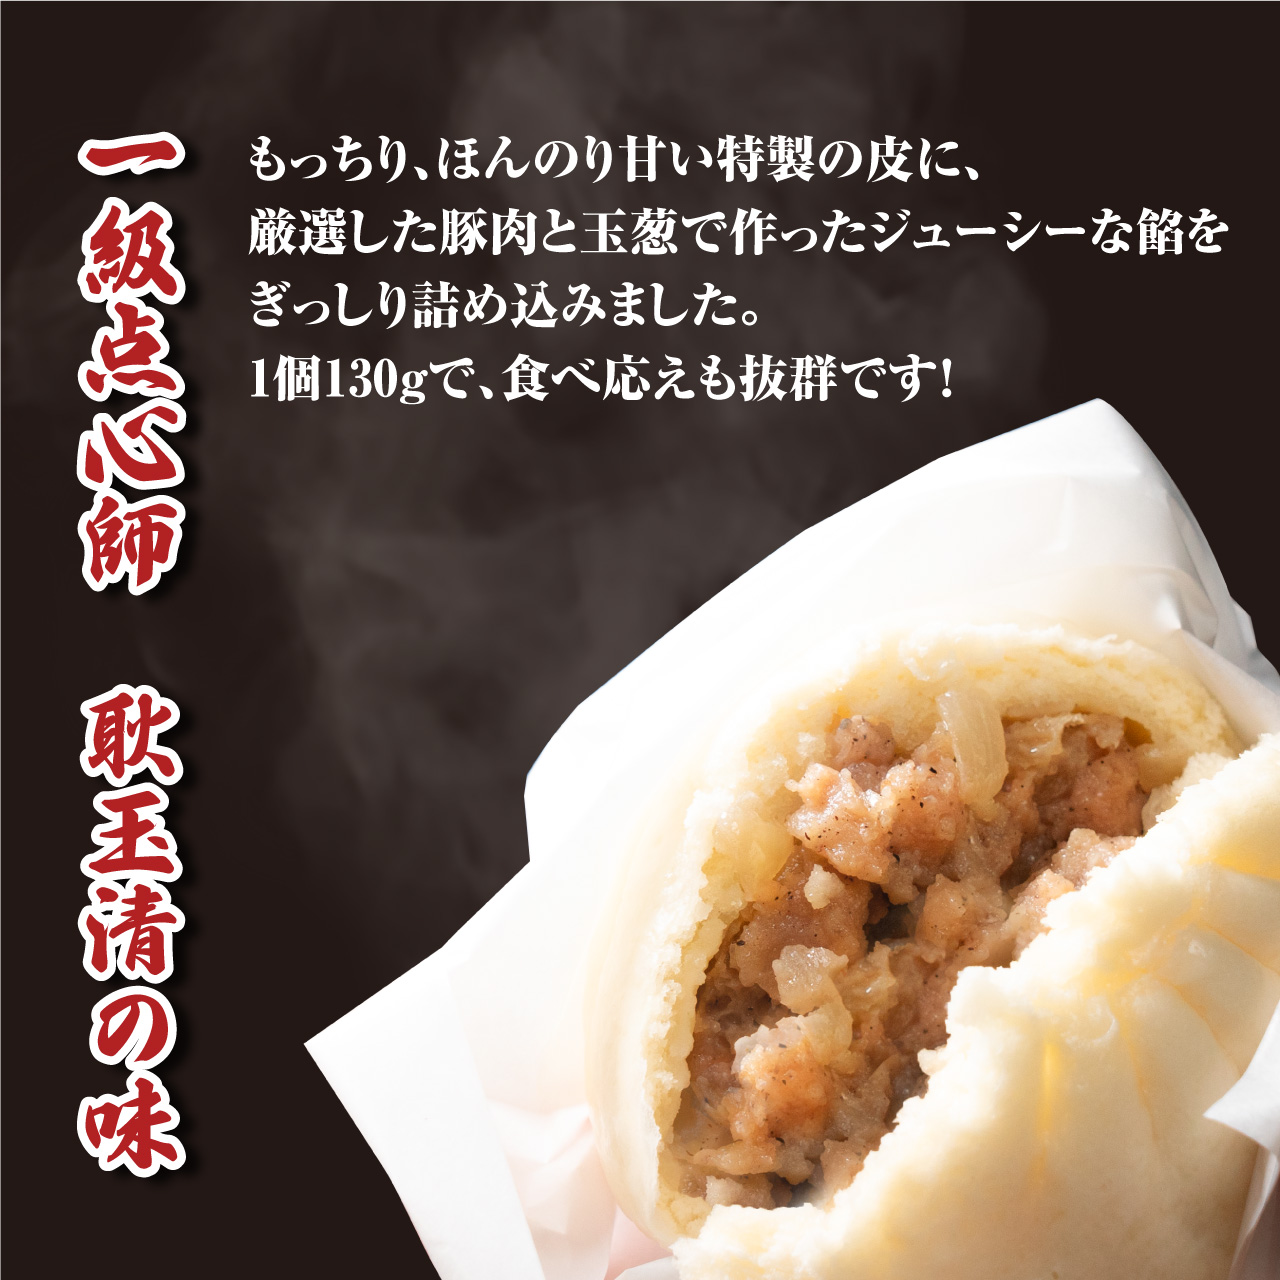 大阪ふくちぁん餃子の豚まんは1個130gの大粒で食べ応えバツグン